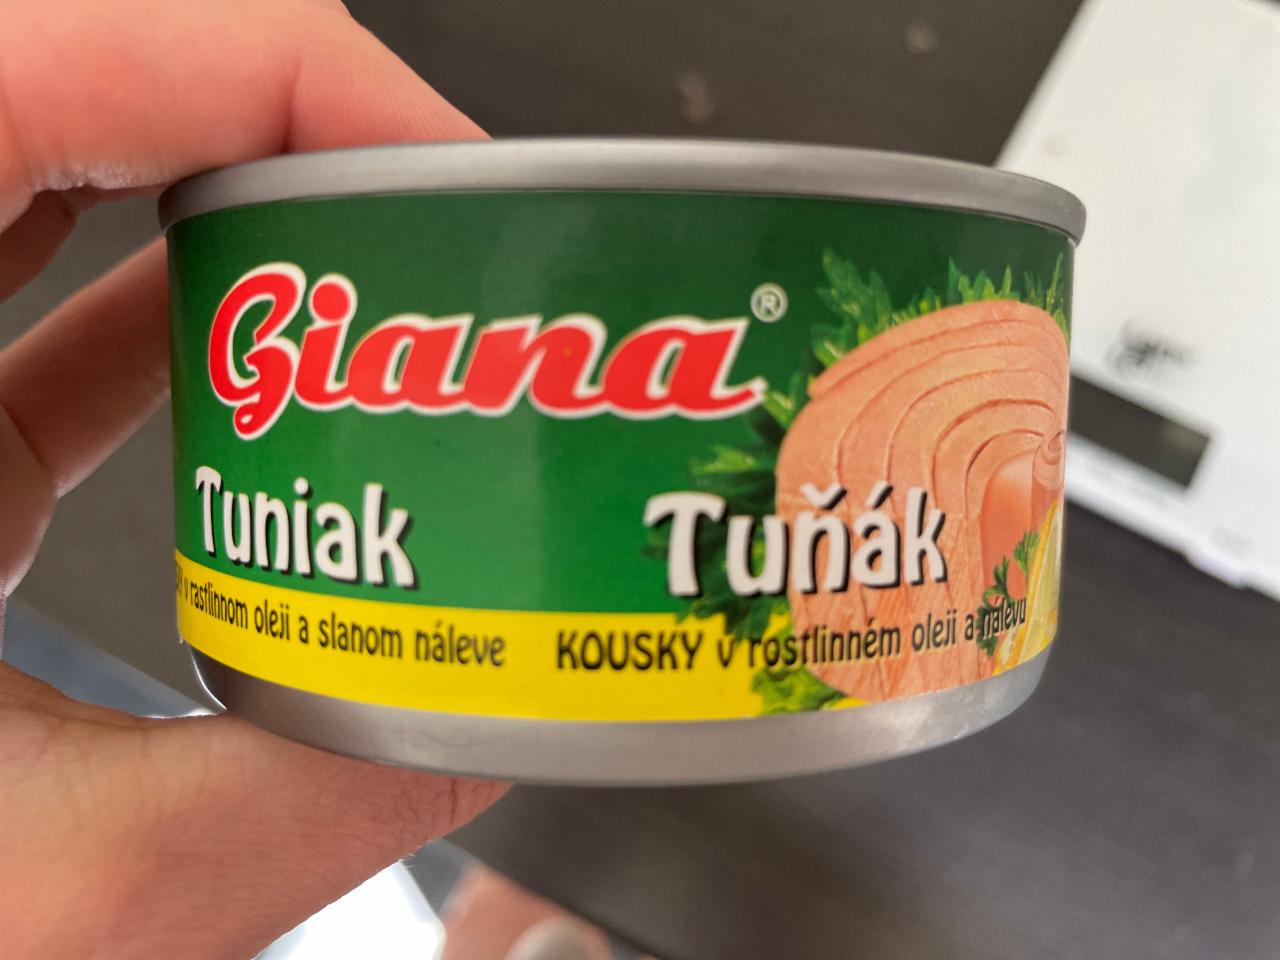 Fotografie - Tuniak kousky v rostlinném oleji a slaném nálevu Giana